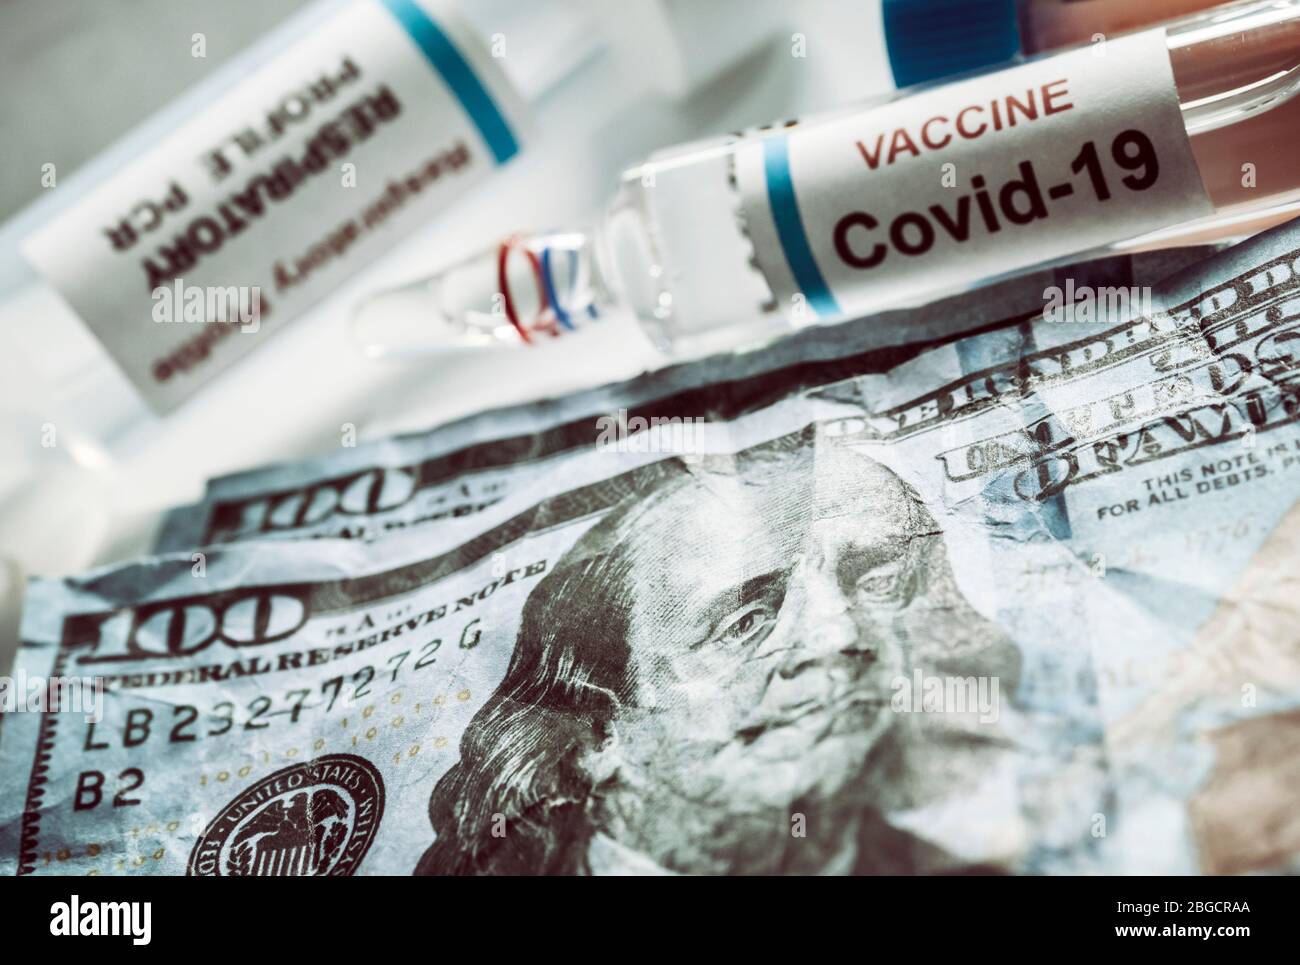 Flacon de coronavirus sur les billets américains, image conceptuelle Banque D'Images